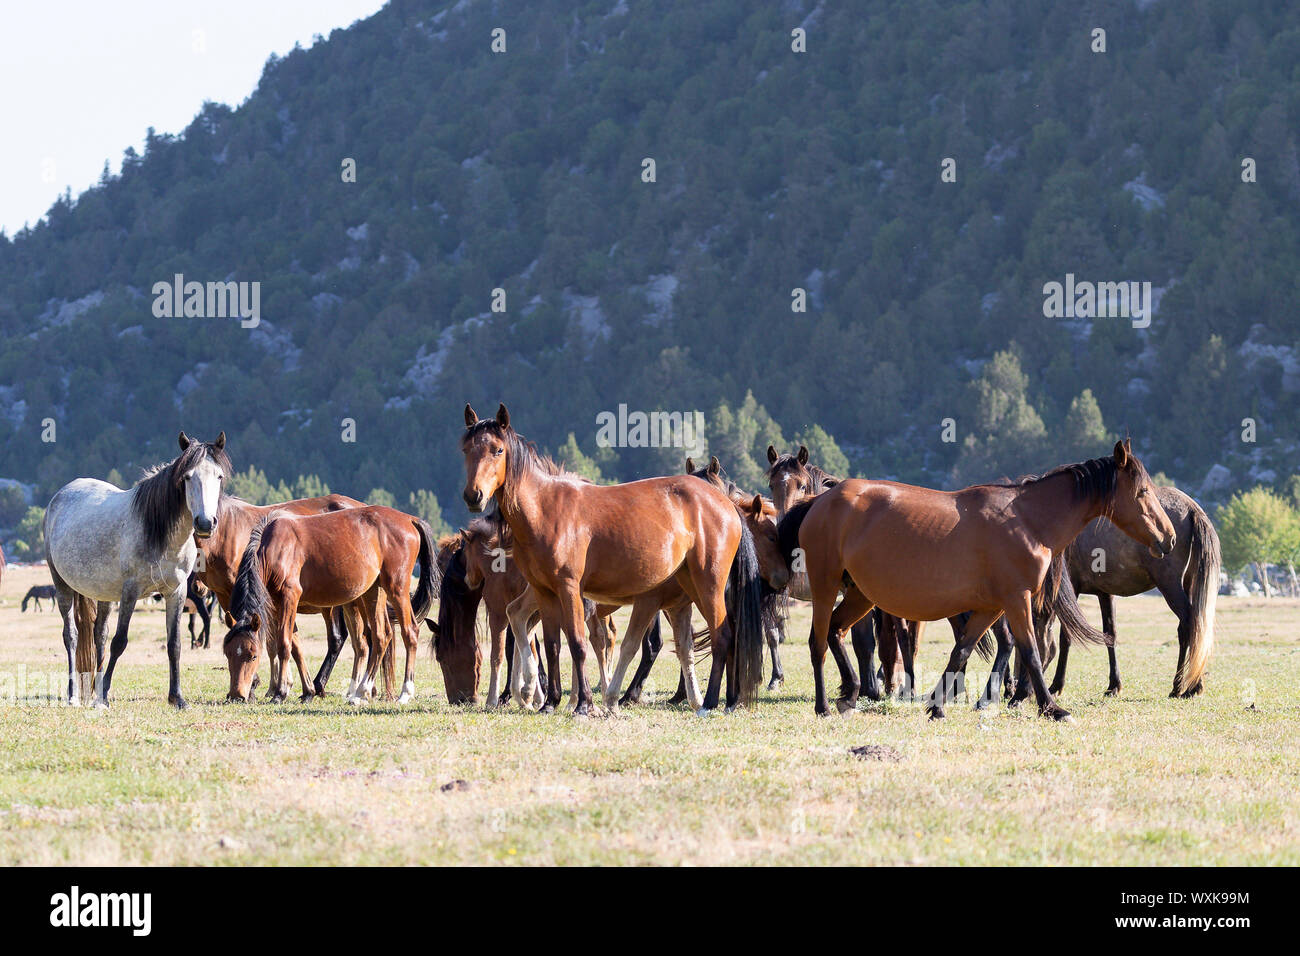 Wild horse, chevaux sauvages. Troupeau debout dans paysage. La Turquie Banque D'Images